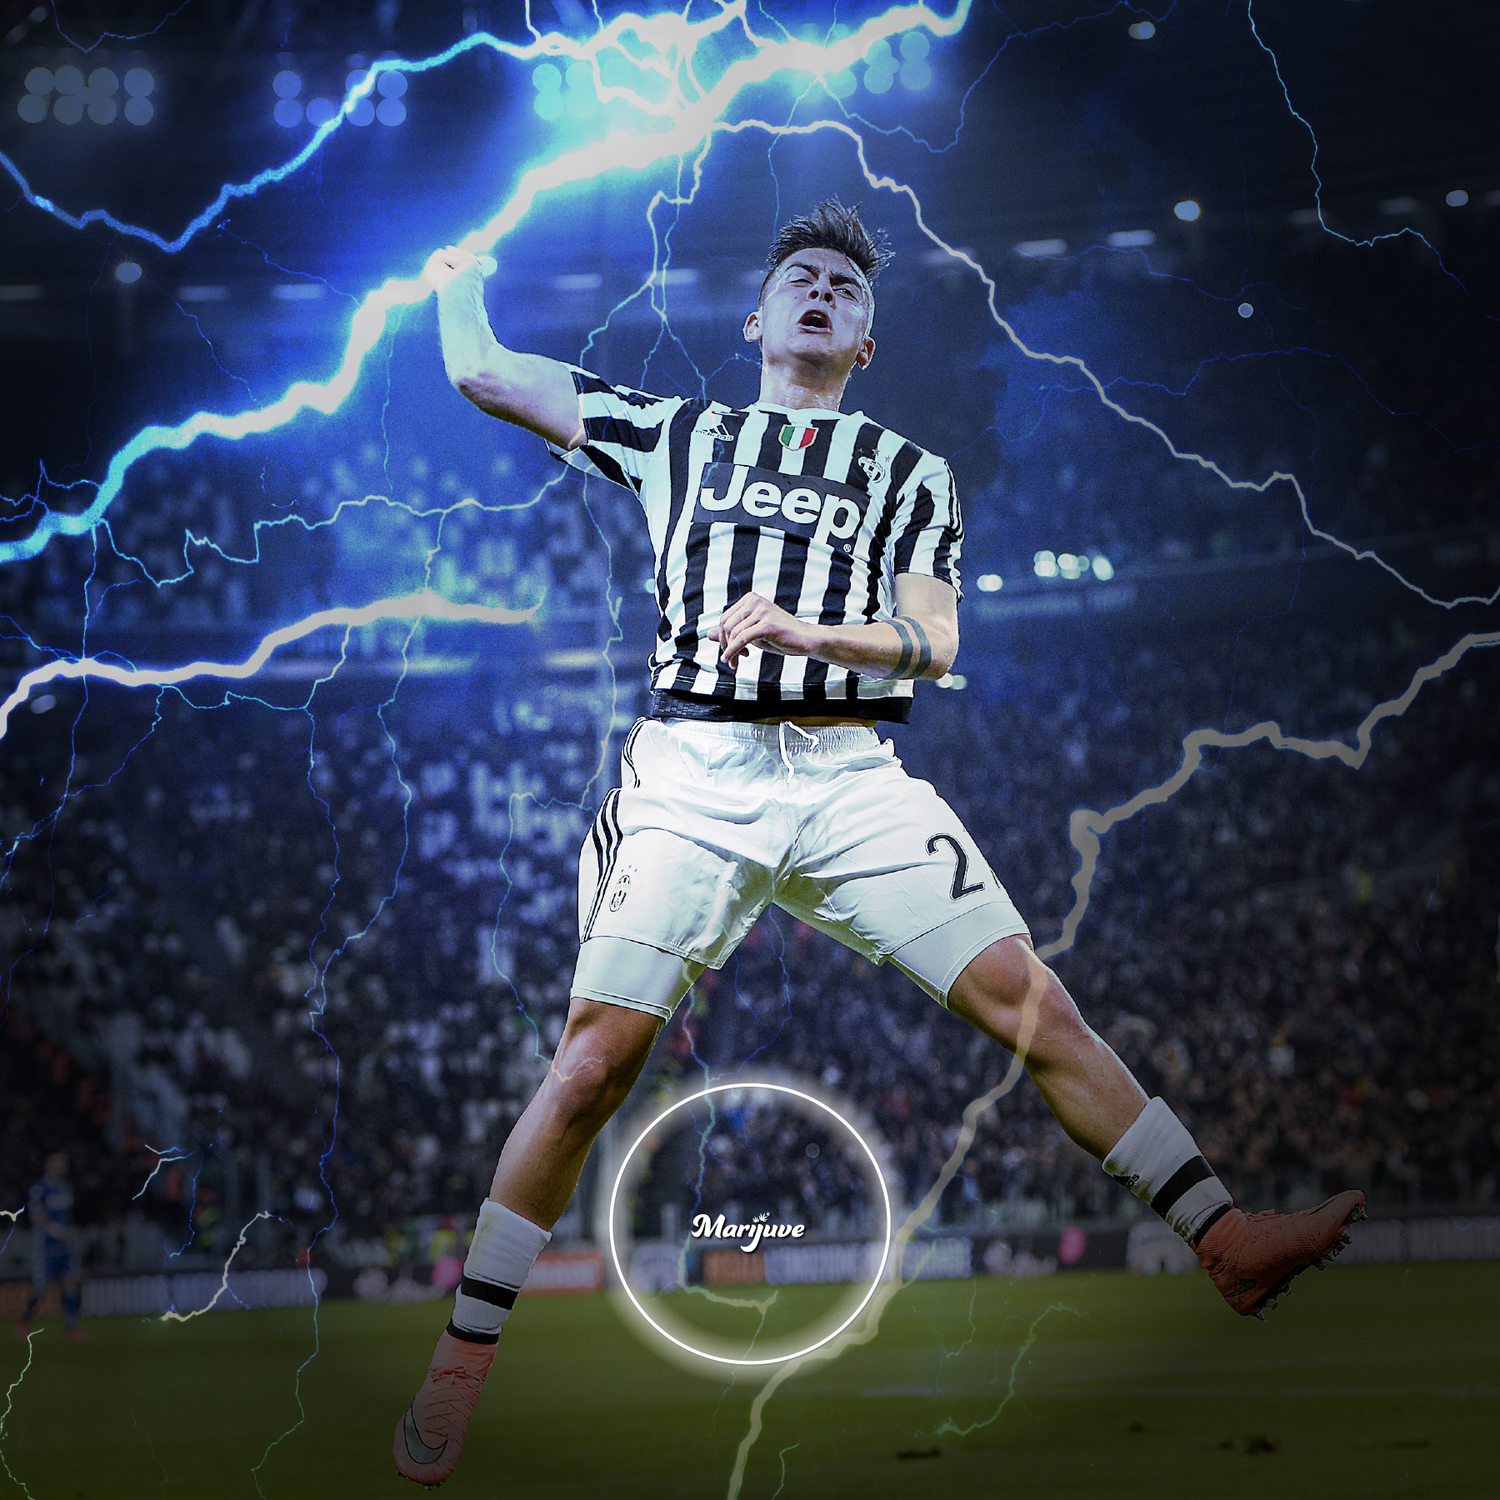 Paulo Dybala. Juventus Lightning Celebration wallpaper